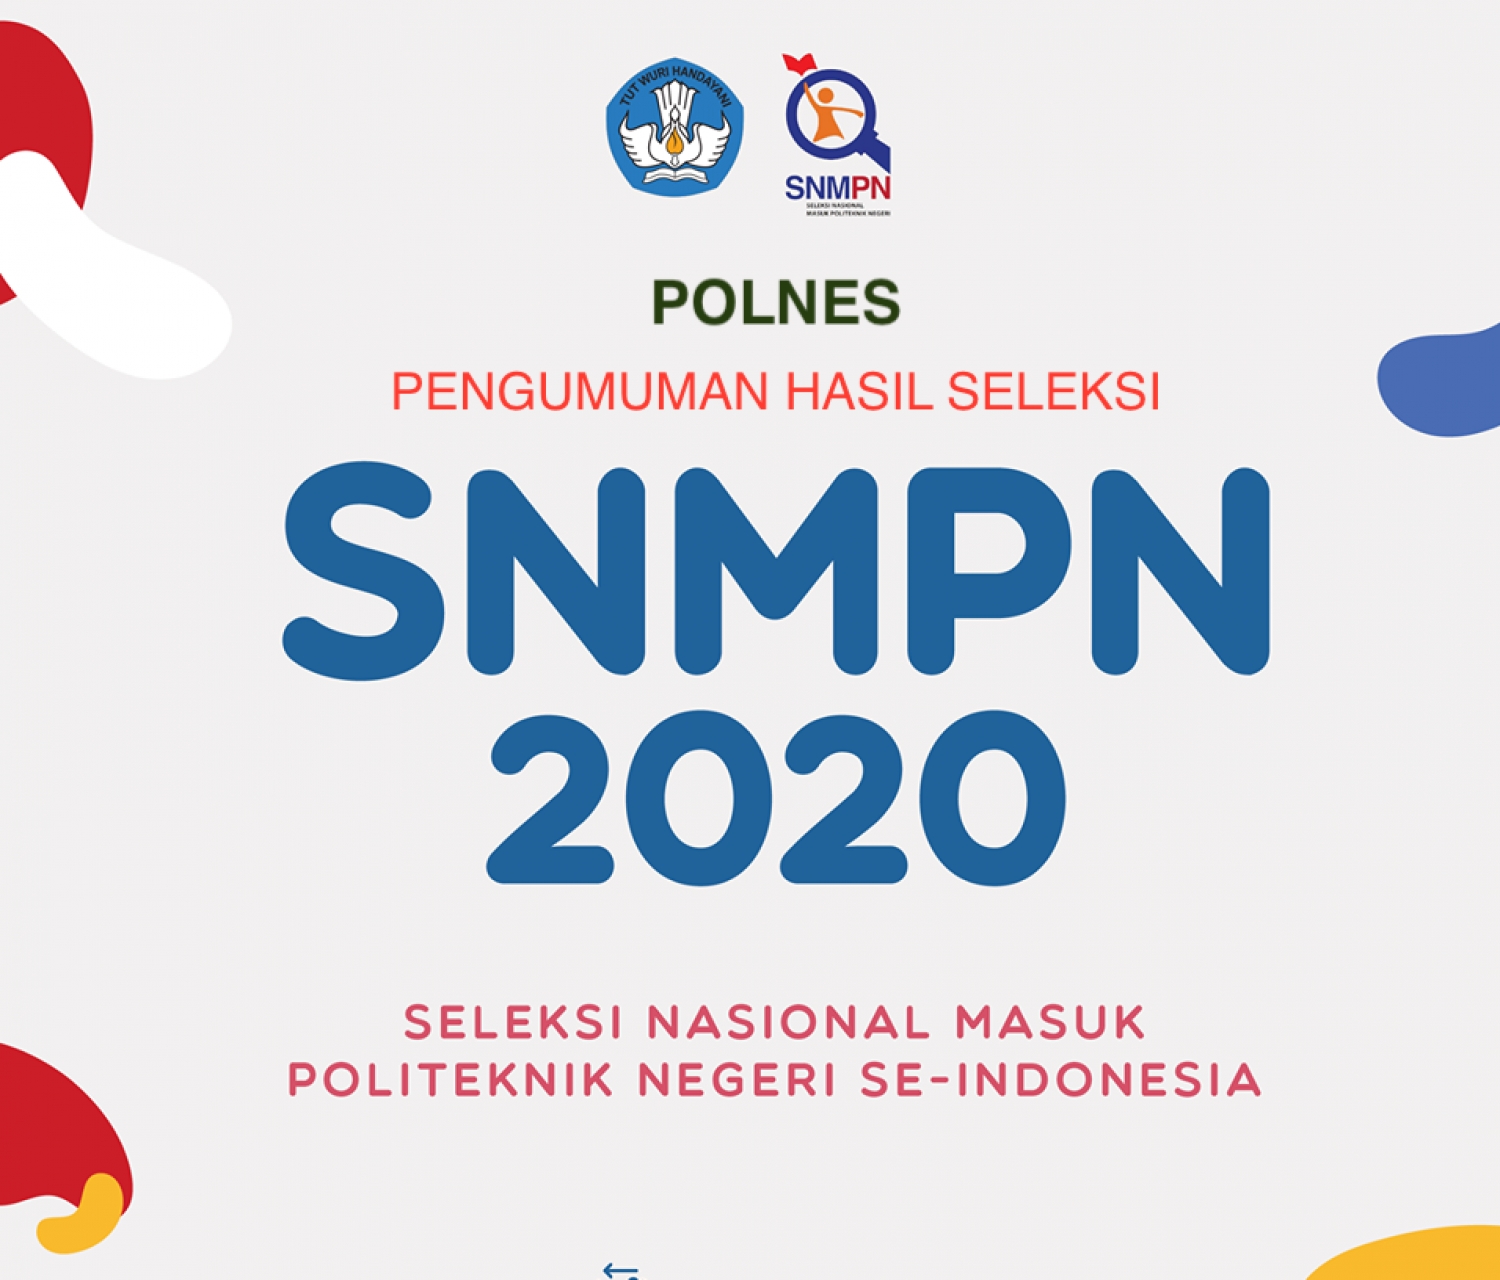 Pengumuman Hasil Seleksi Snmpn Pmdk Pn Pbud Polnes 2020 2021